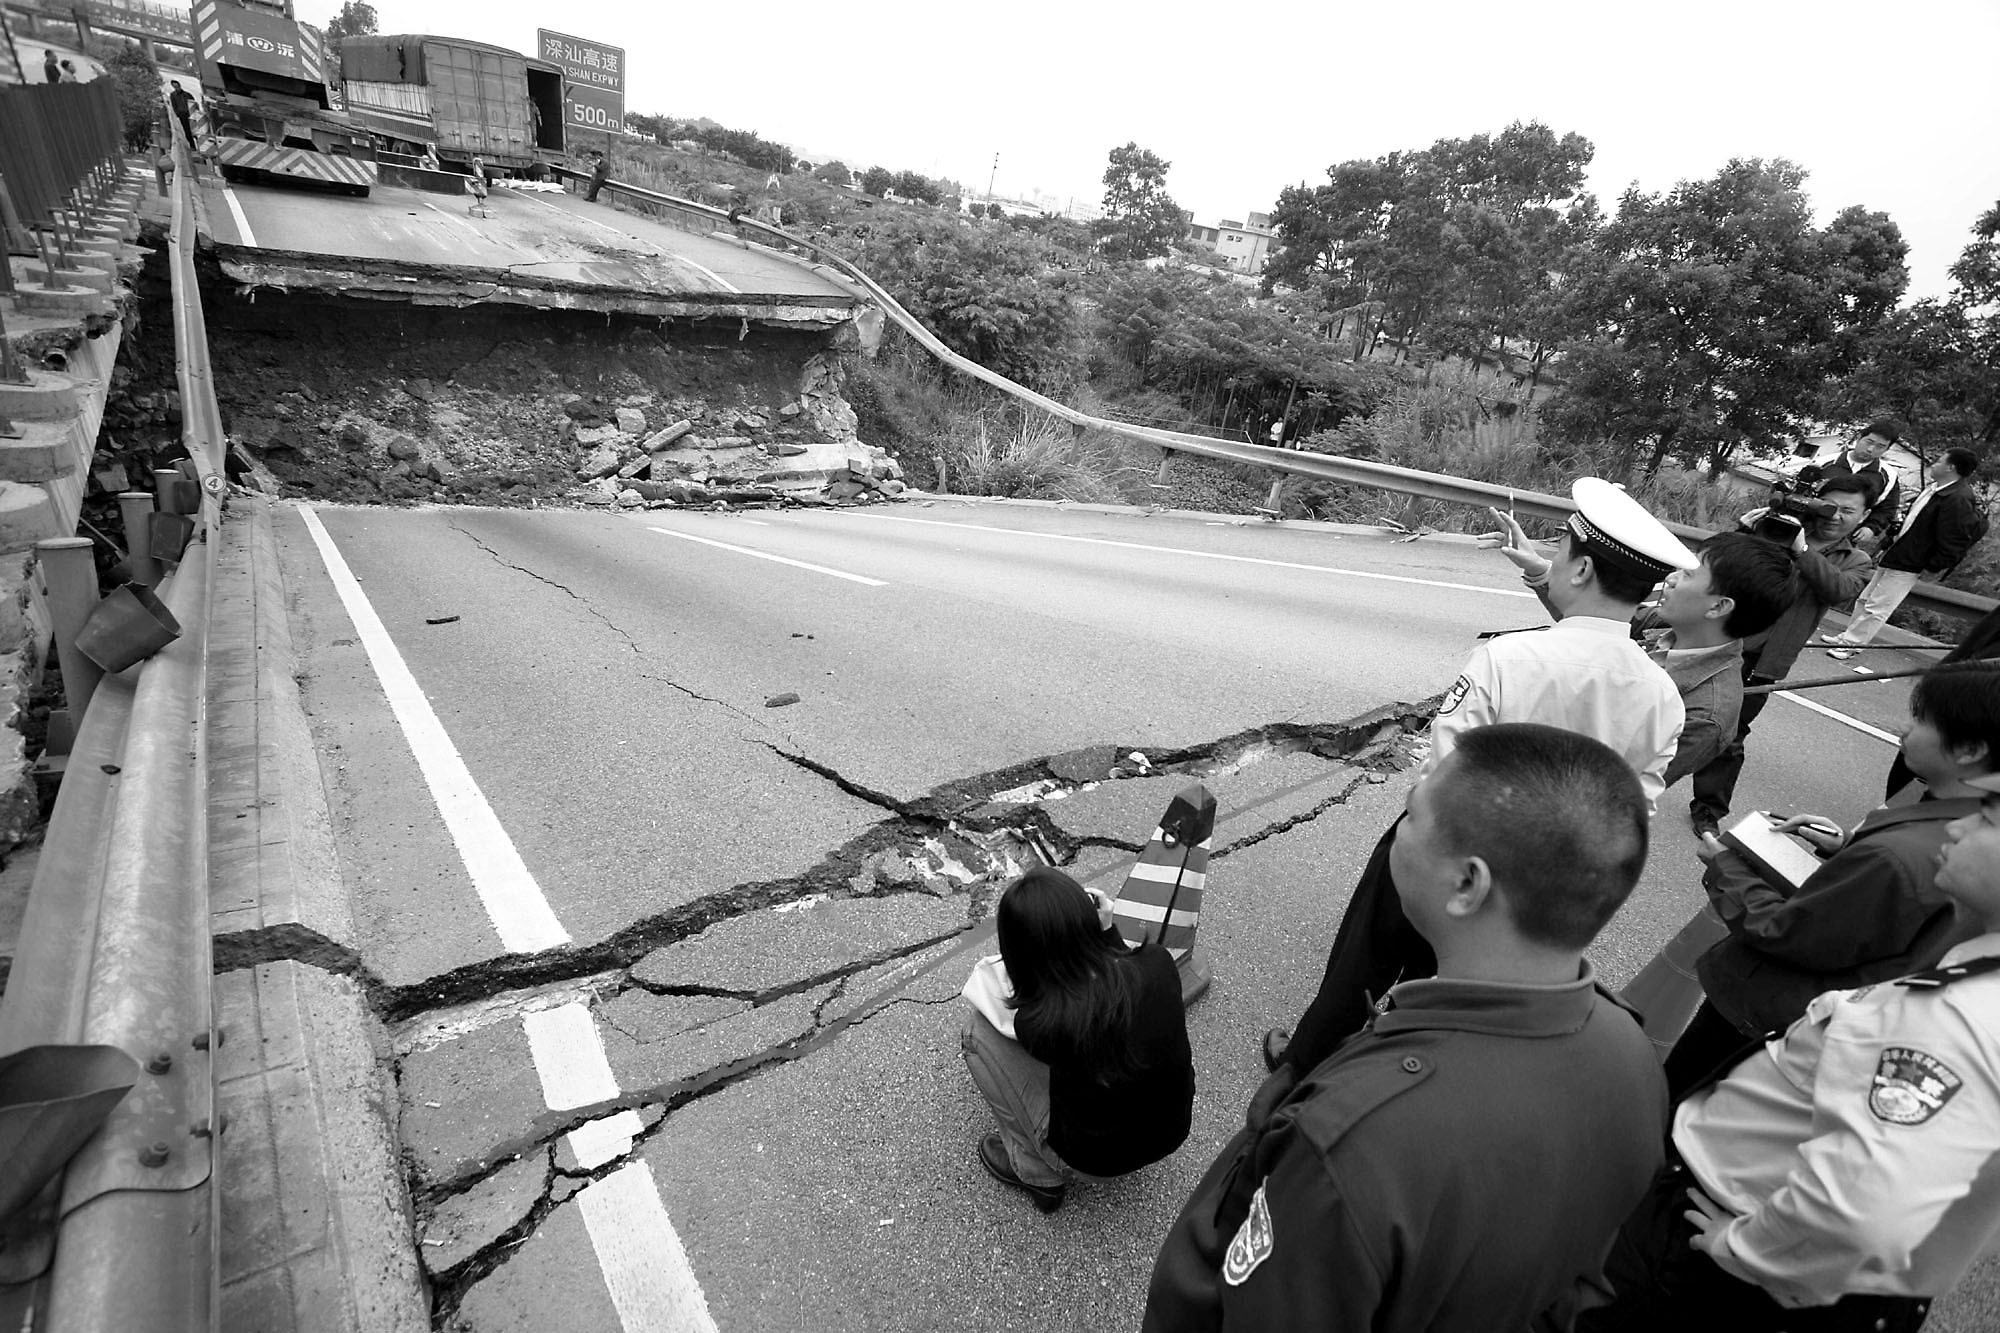 广东梅大高速路面塌方事故已致24人死亡 | 极目新闻